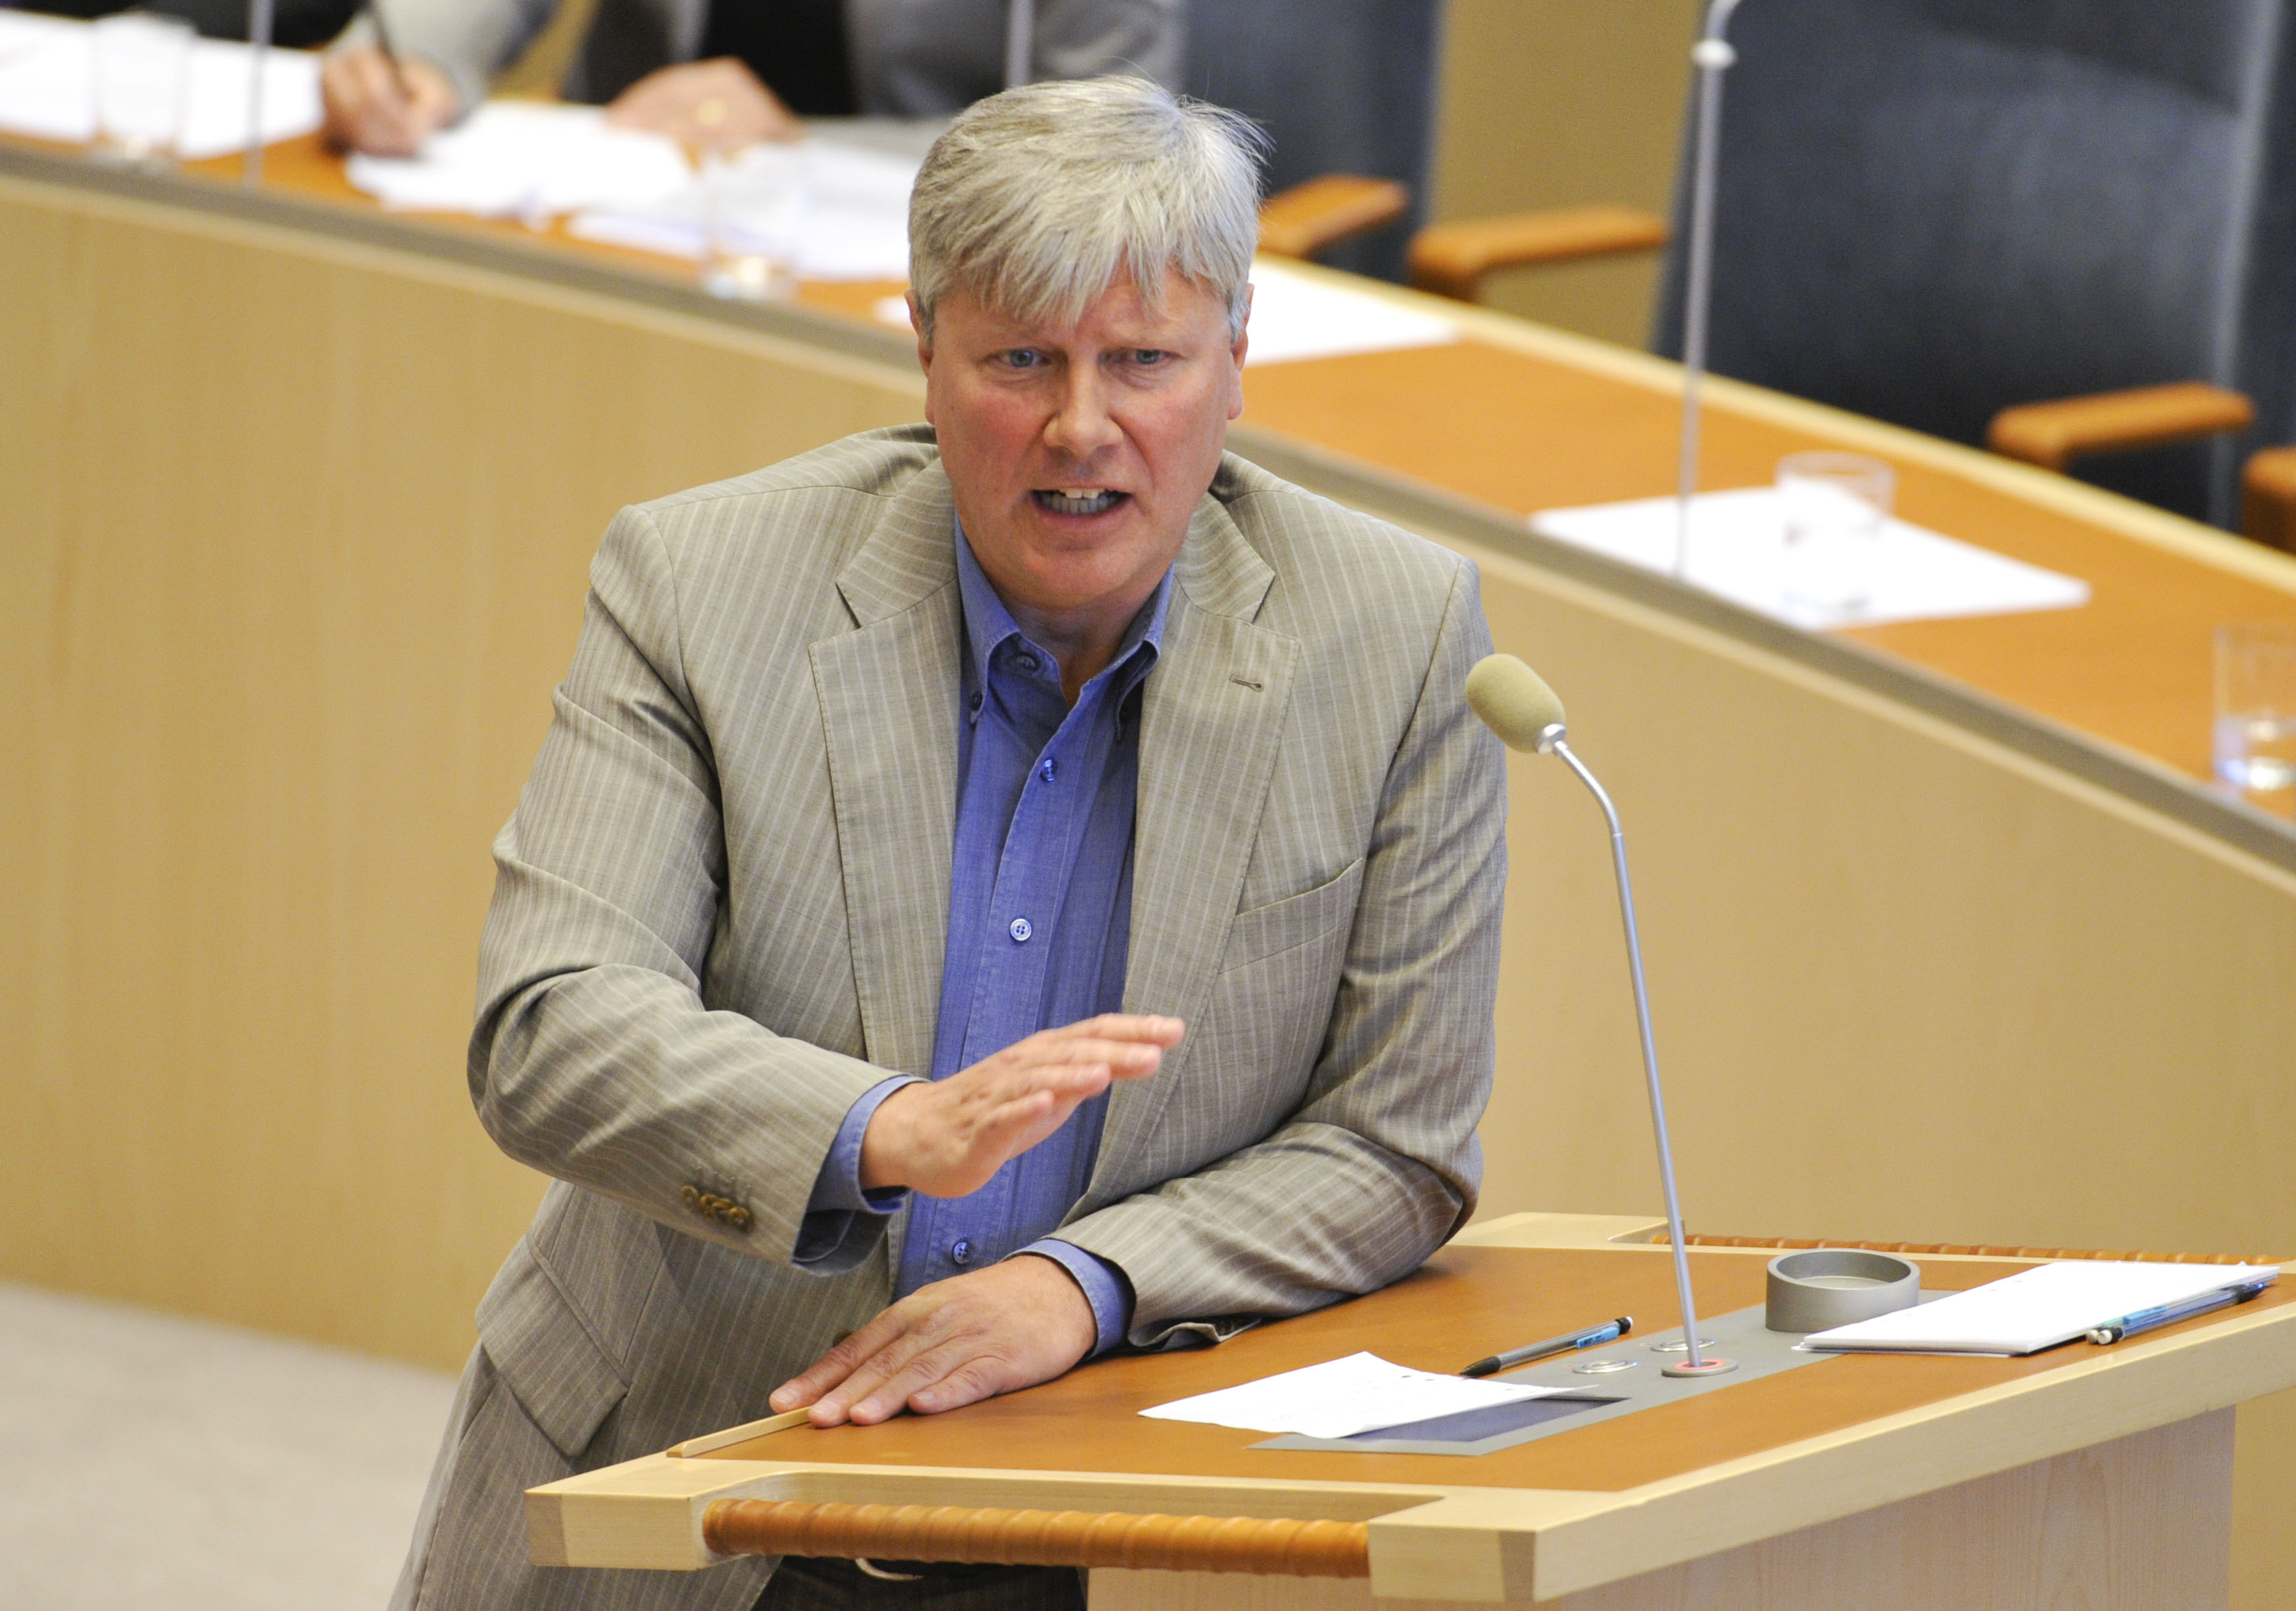 Carin Jämtin, lars ohly, vänsterpartiet, Avgång, Håkan Juholt, Socialdemokraterna, Politik